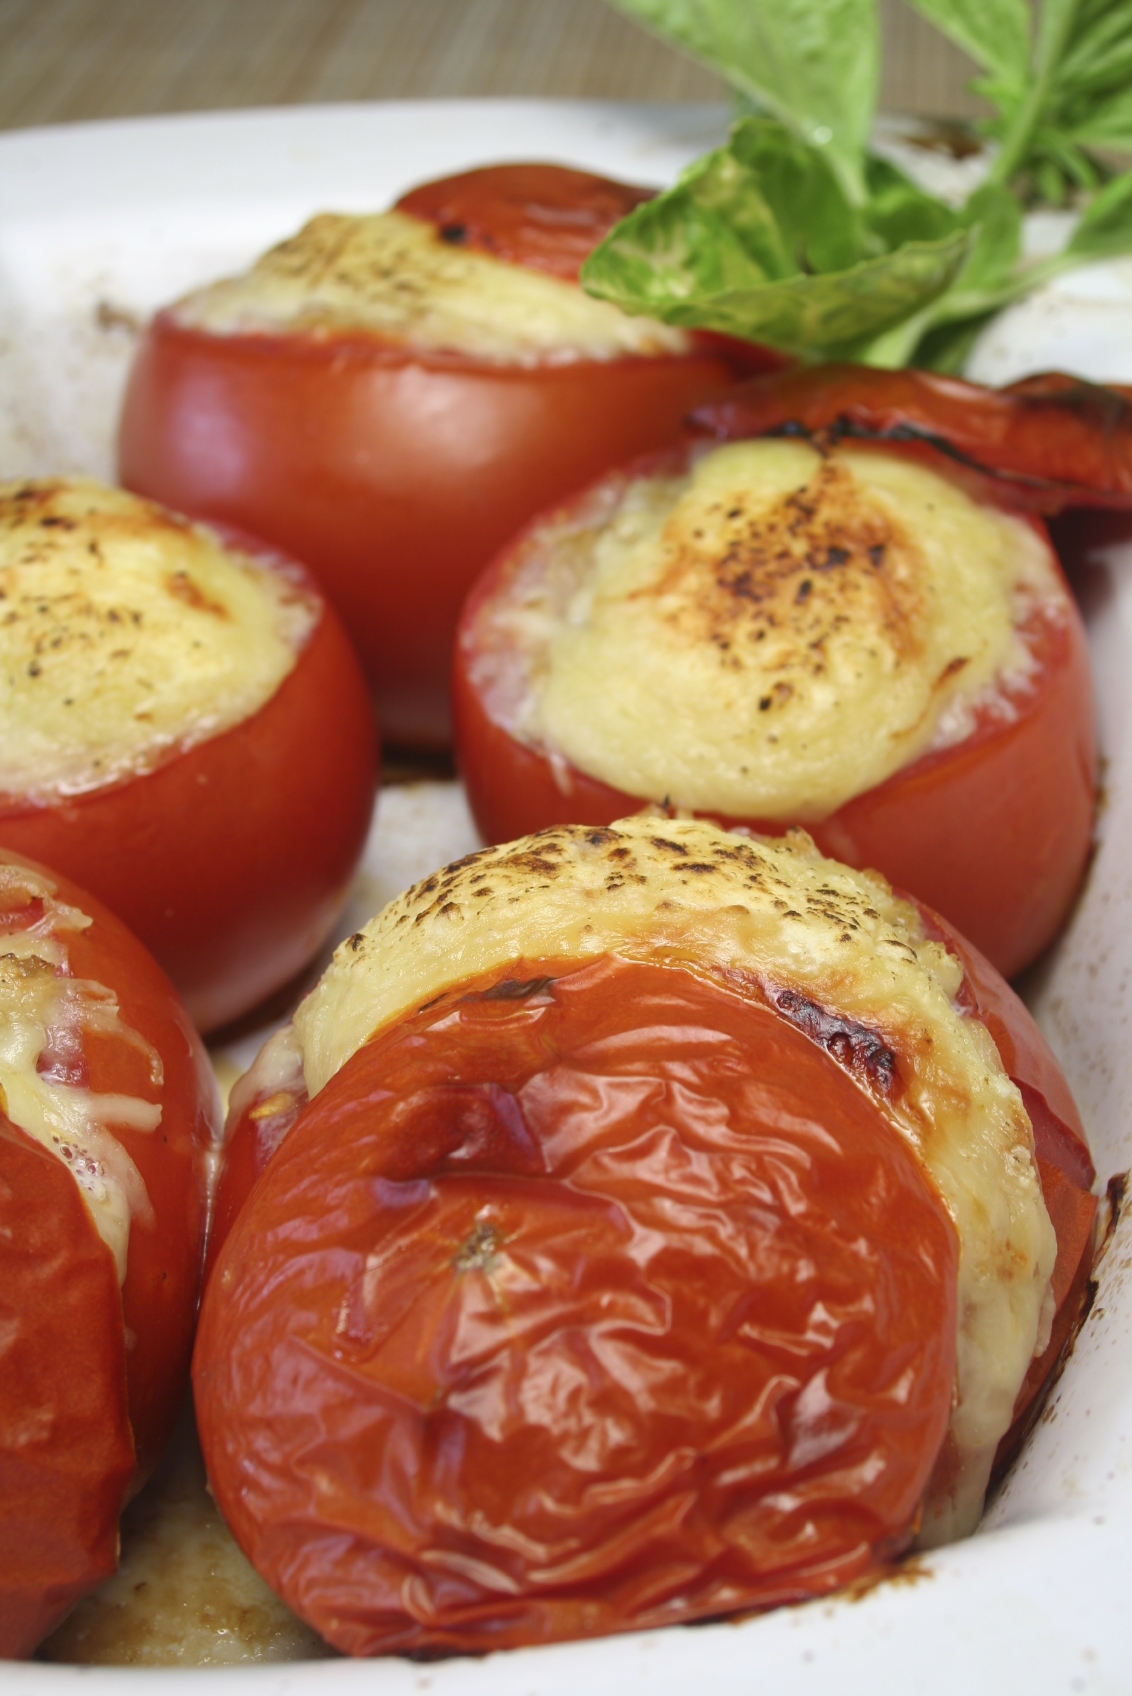 Tomates gratinados rellenos de langostinos